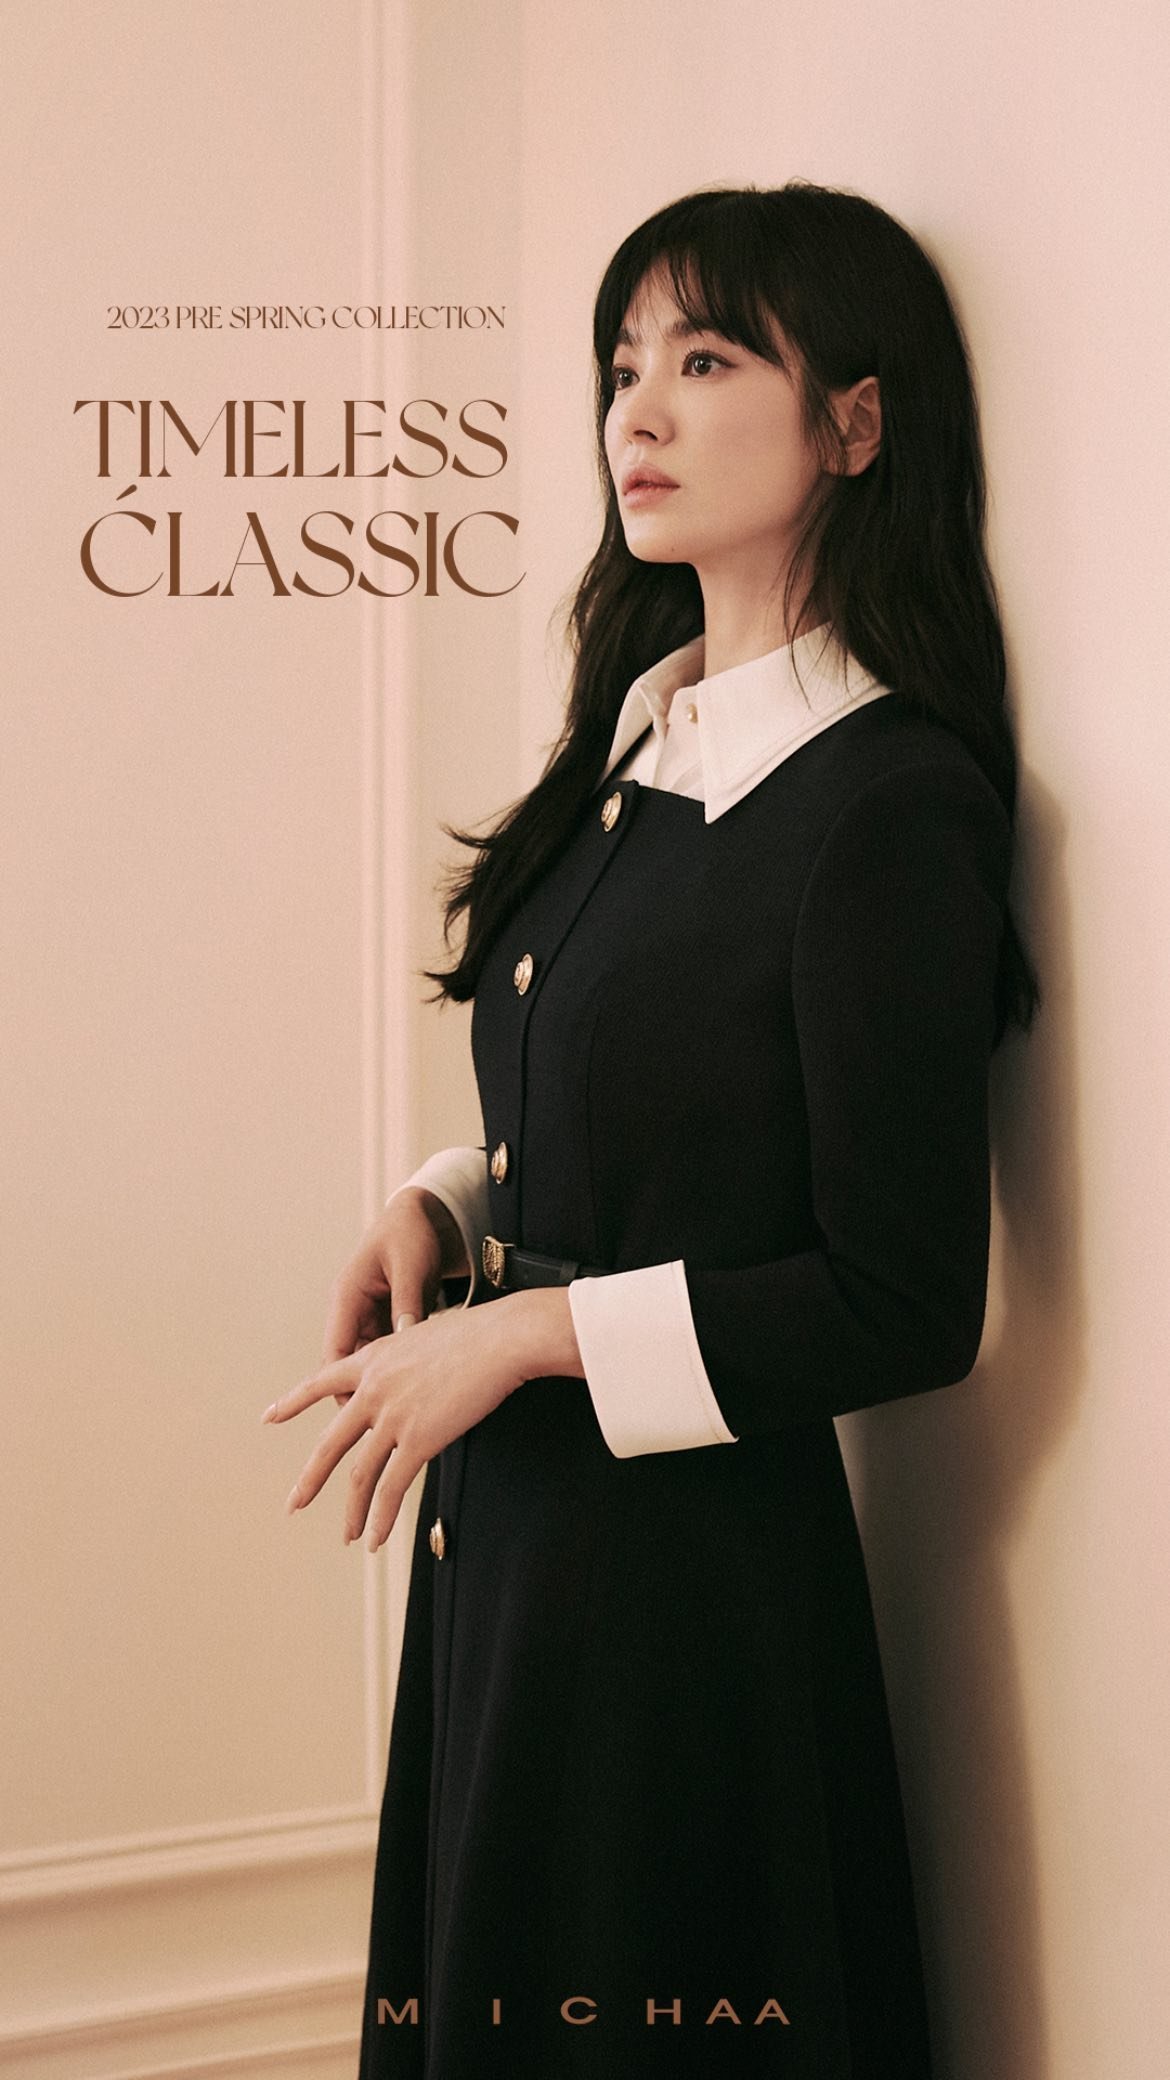 Song Hye Kyo dội bom loạt ảnh tạp chí mới đáp lại ồn ào lão hoá: Nhan sắc xứng tầm định nghĩa cho cụm sốc visual! - Ảnh 10.